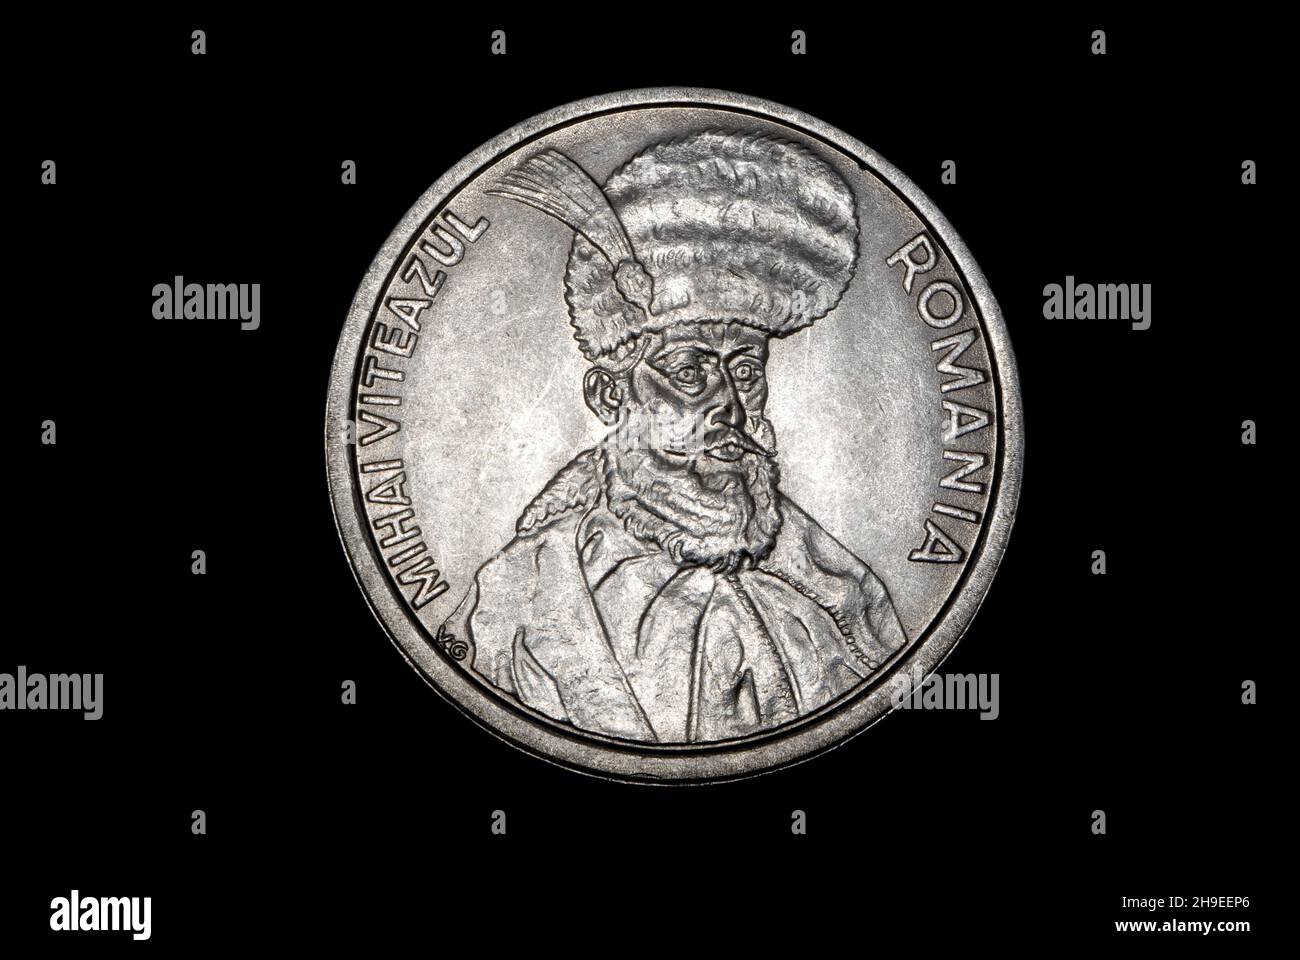 100 Lei Rumänische Münze Stockfoto